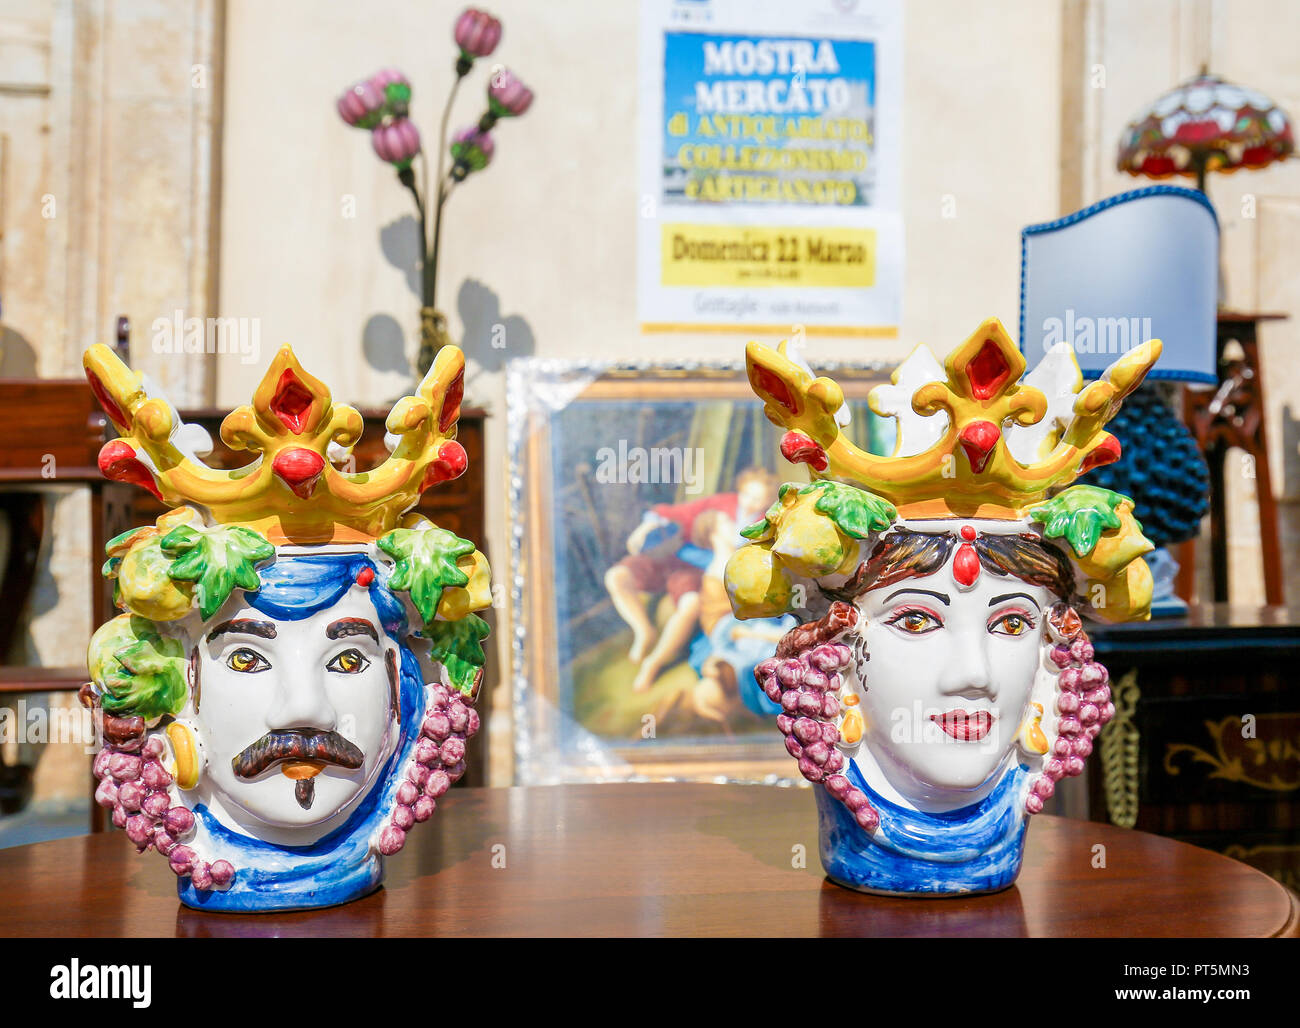 Typical handmade ceramic at a flea market in Martina Franca, Taranto  province, South Italy Stock Photo - Alamy